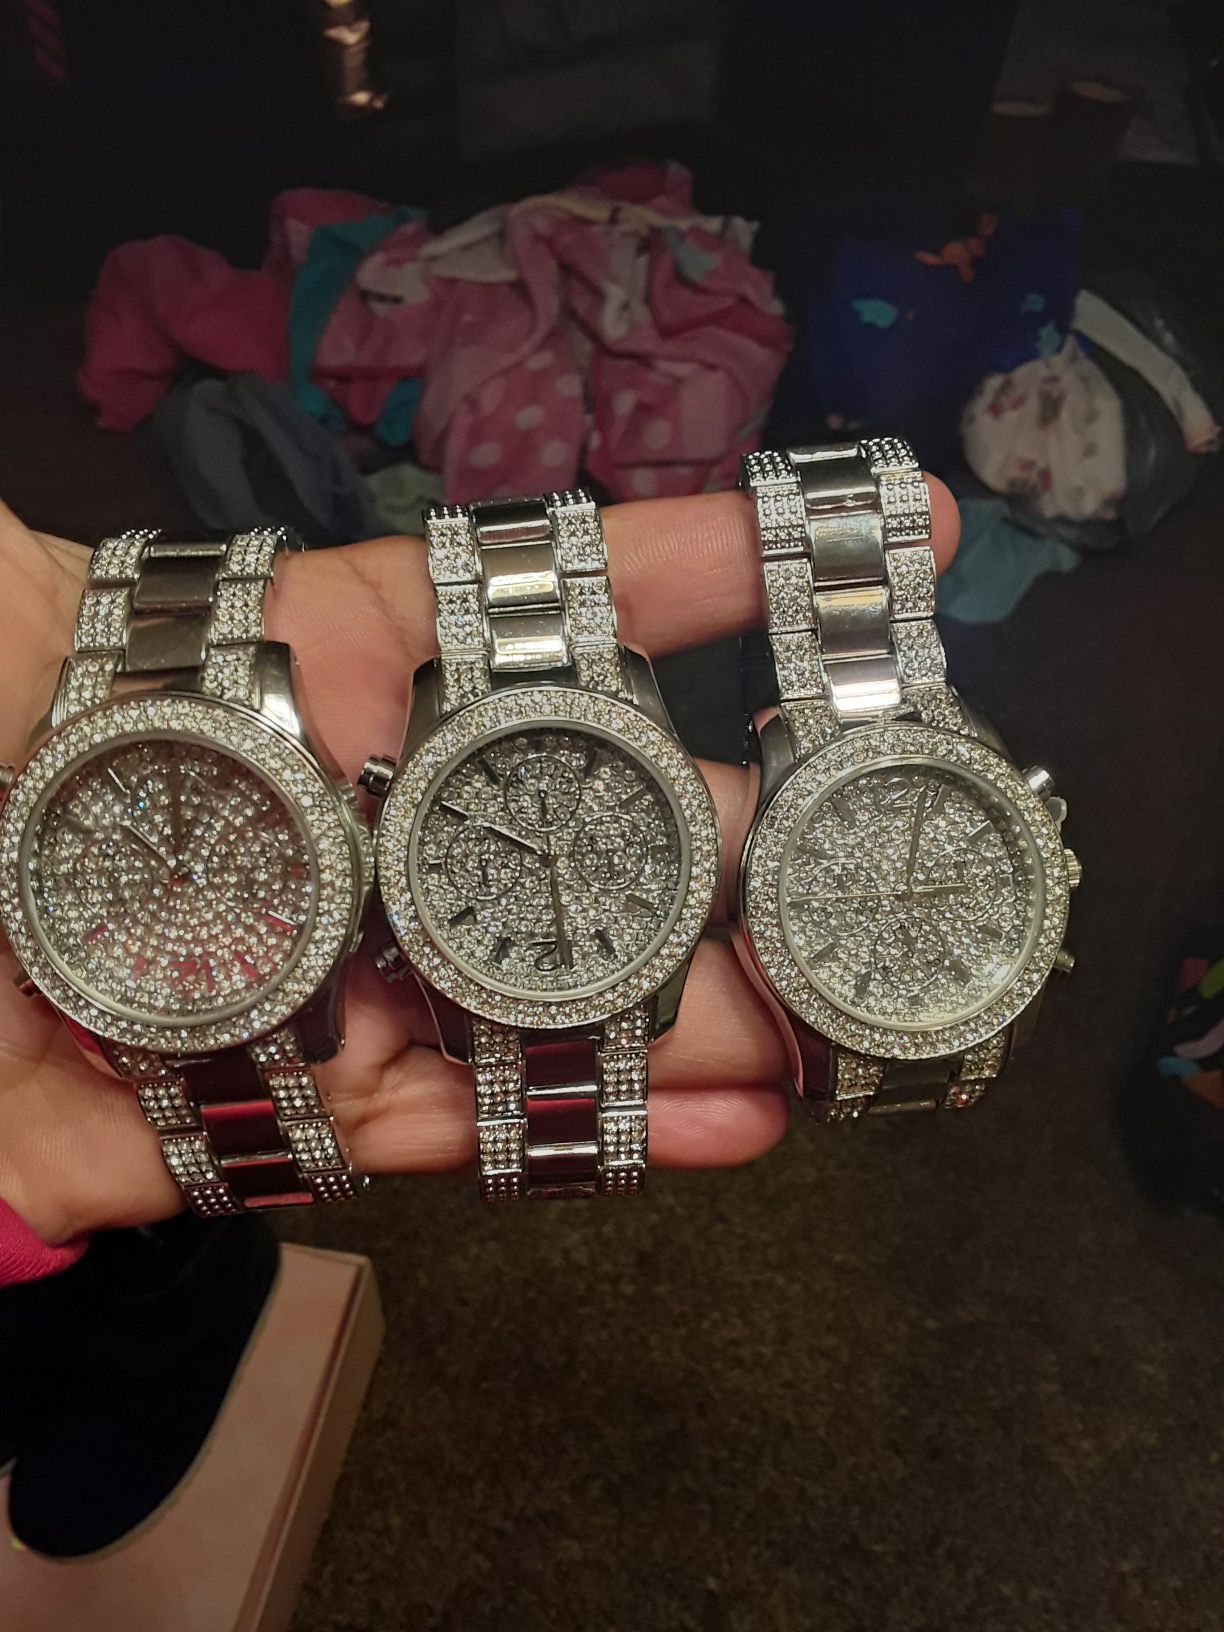 New womens quartz silver diamond watches $5 each all $15